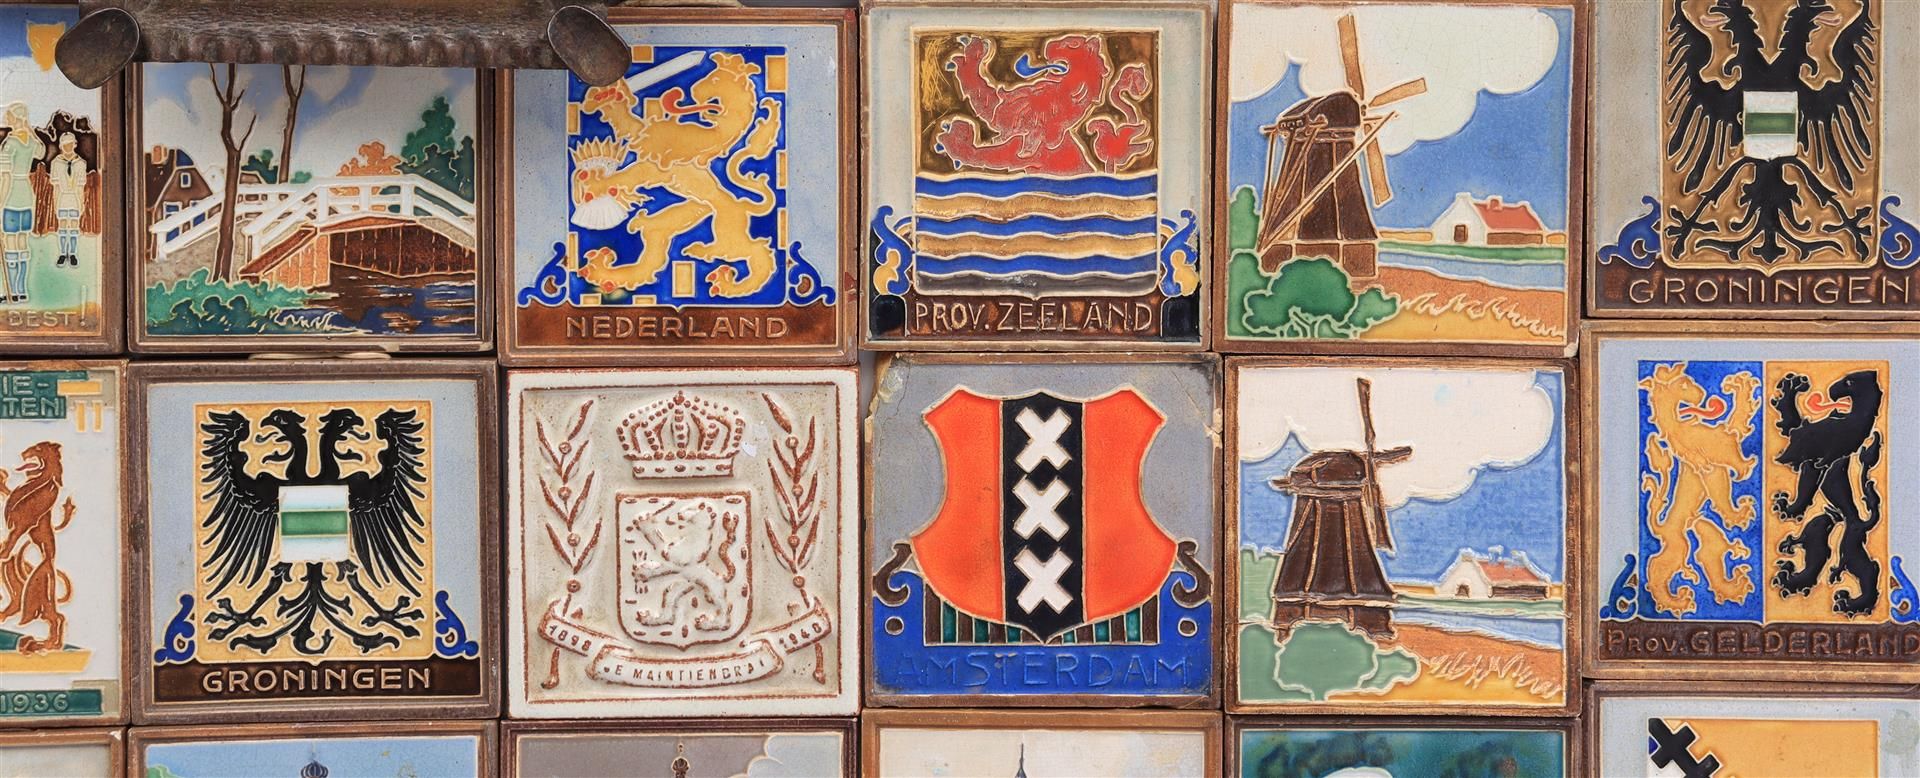 Westraven Utrecht, 39 x earthenware cloissonne tiles - Image 2 of 10